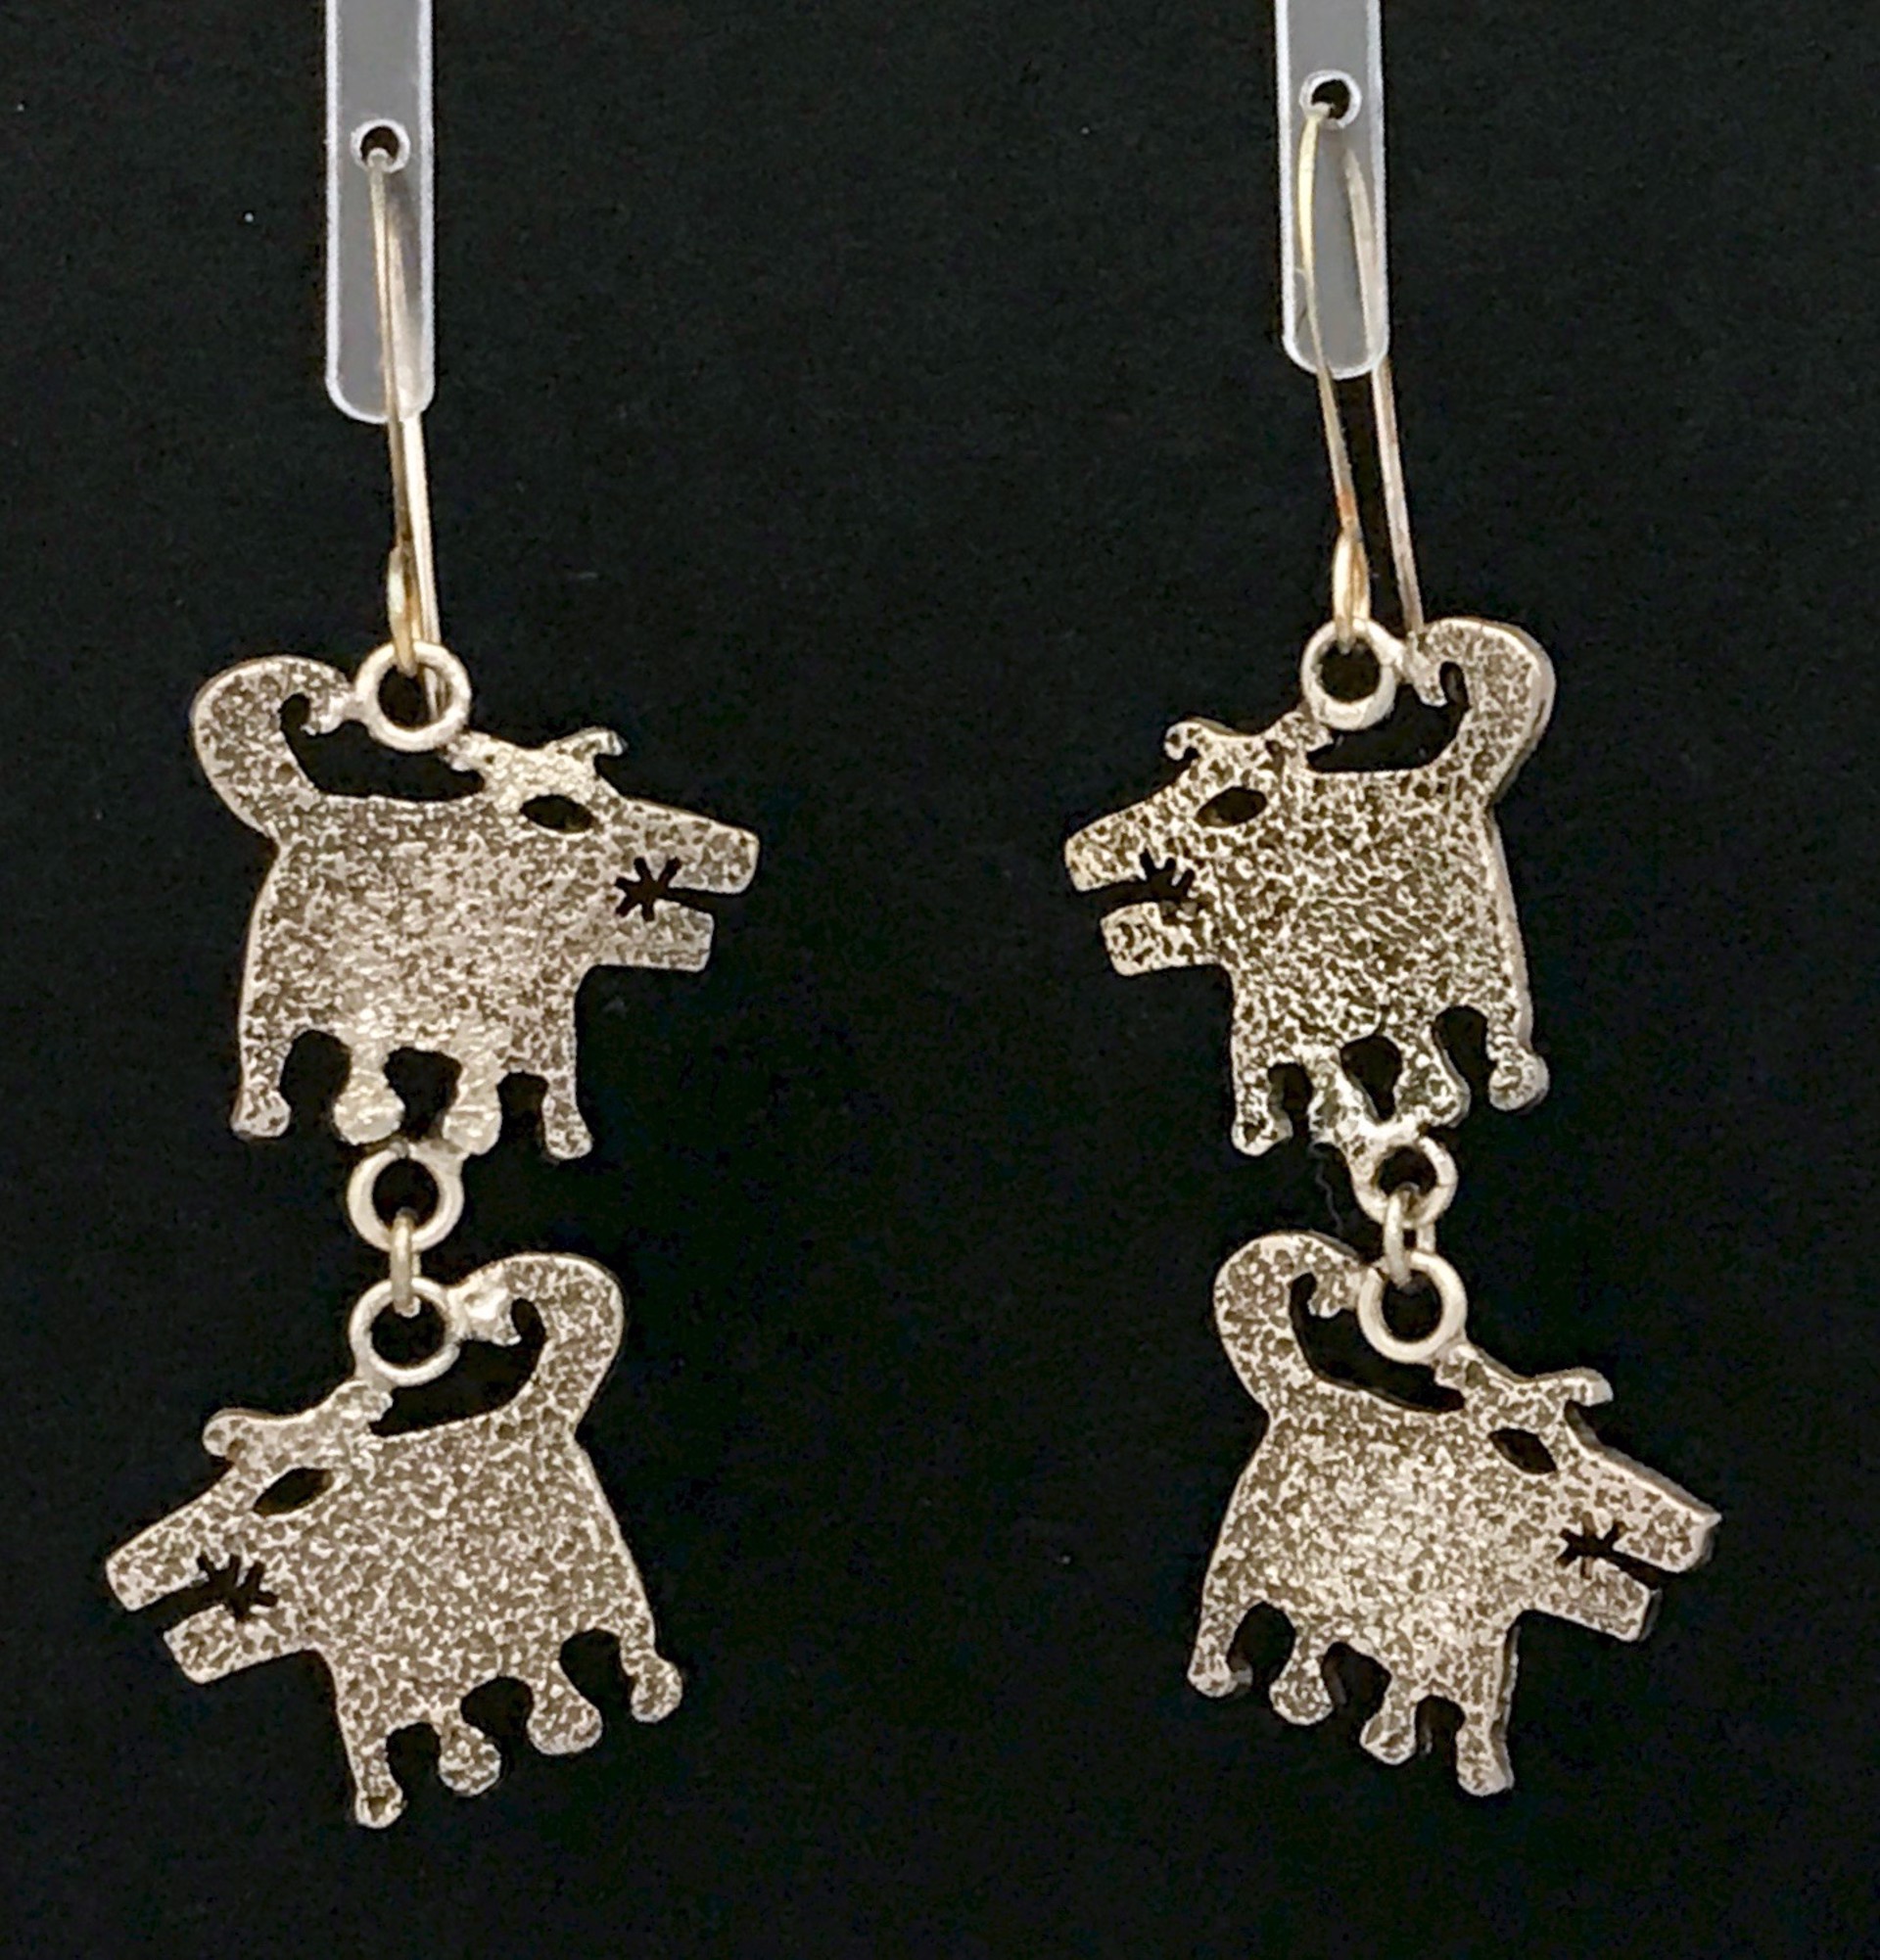 Double Dog Drop earrings by Melanie A. Yazzie